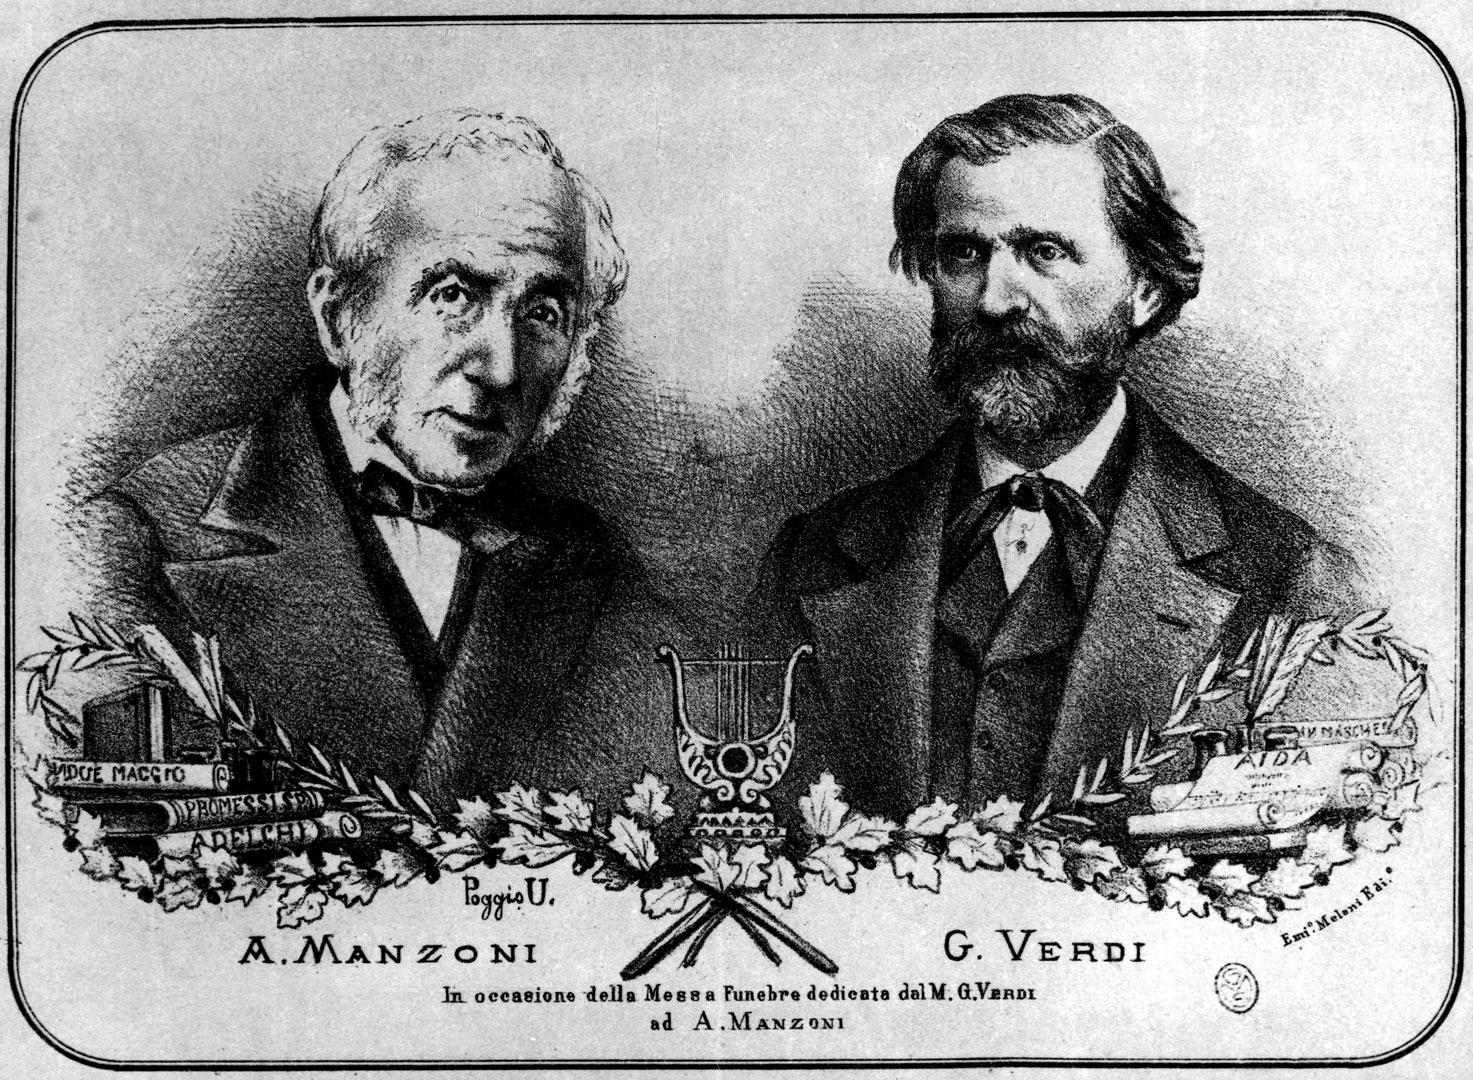 Manzonni y Verdi Auditorio Nacional